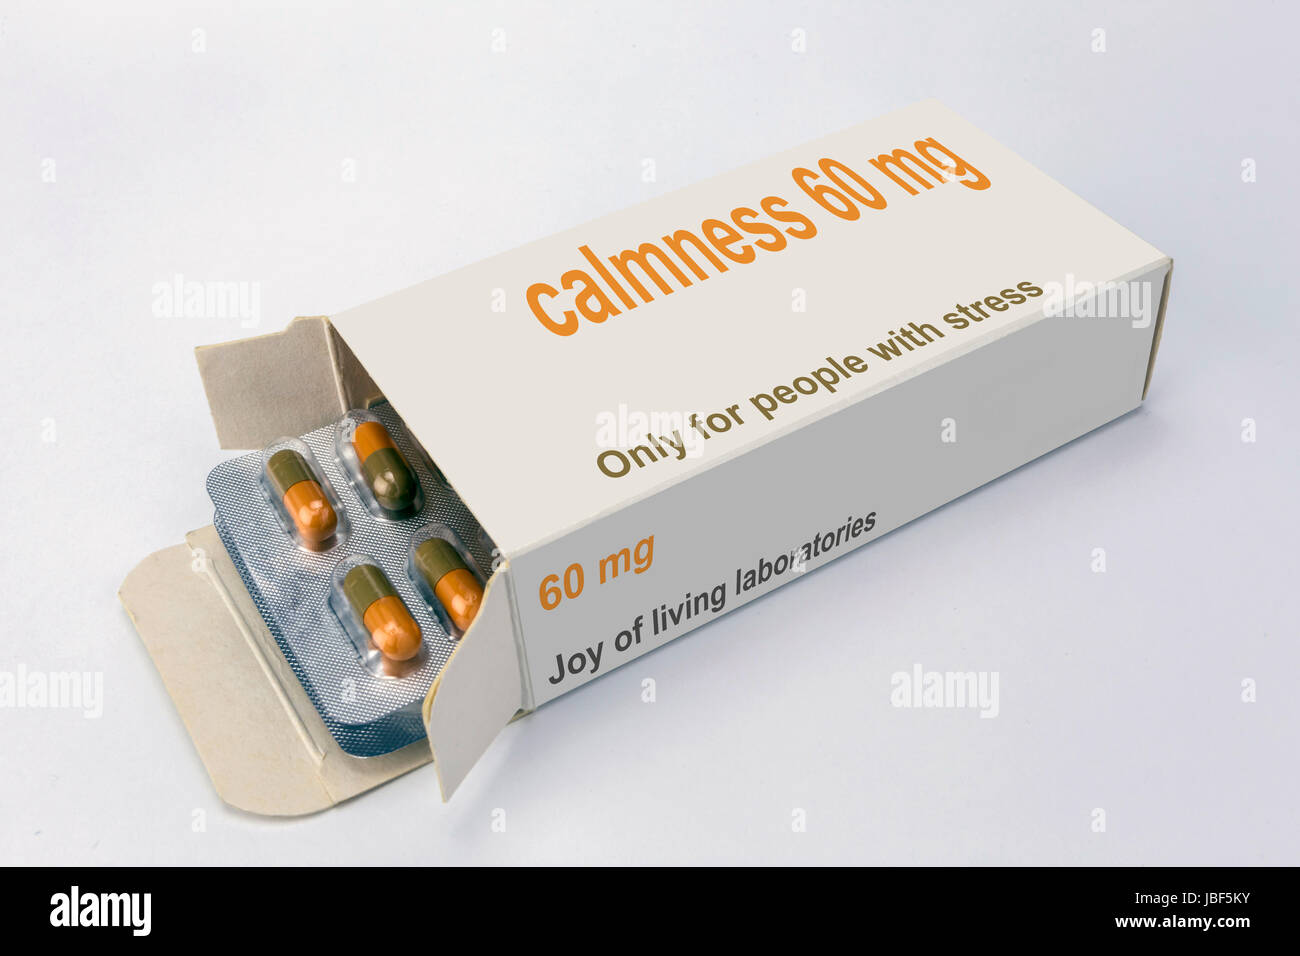 Paquet Open Medicine intitulée le calme ouvert à une extrémité pour afficher un blister de comprimés, isolated on white Banque D'Images